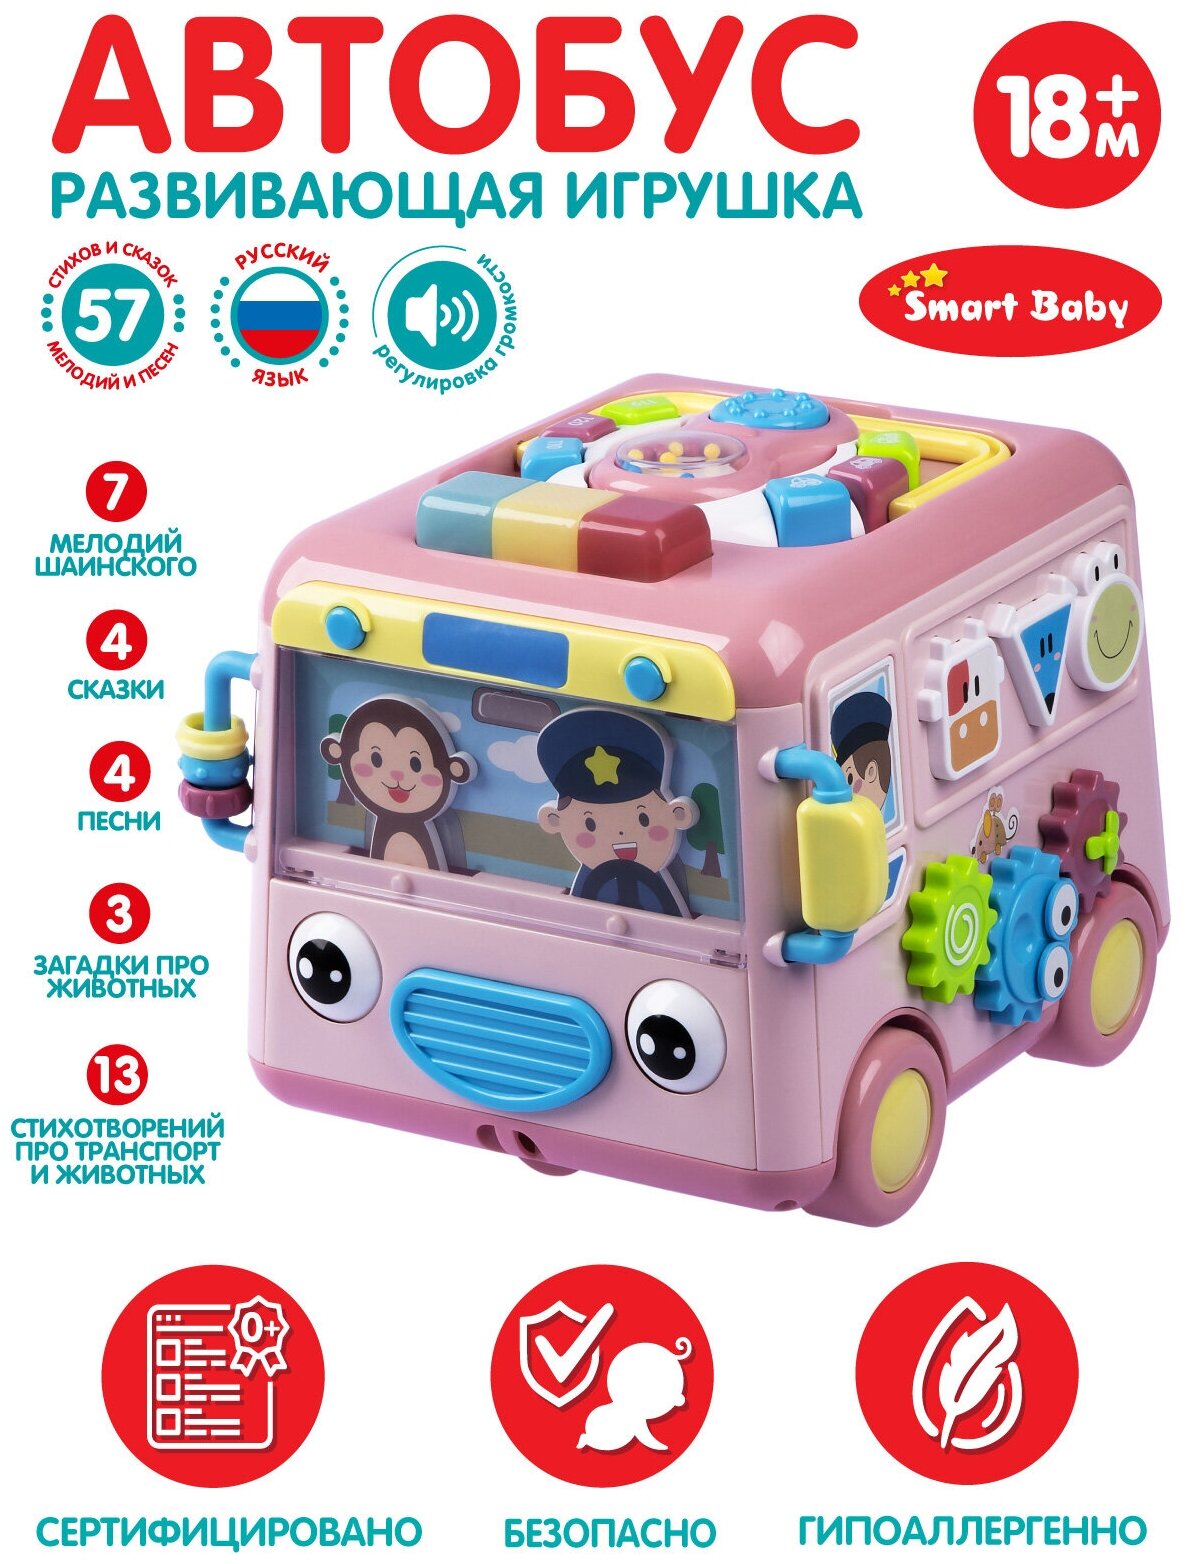 Развивающая музыкальная игрушка Автобус ТМ Smart Baby, игровой центр, элементы бизиборда, мелодии В. Шаинского, JB0334010